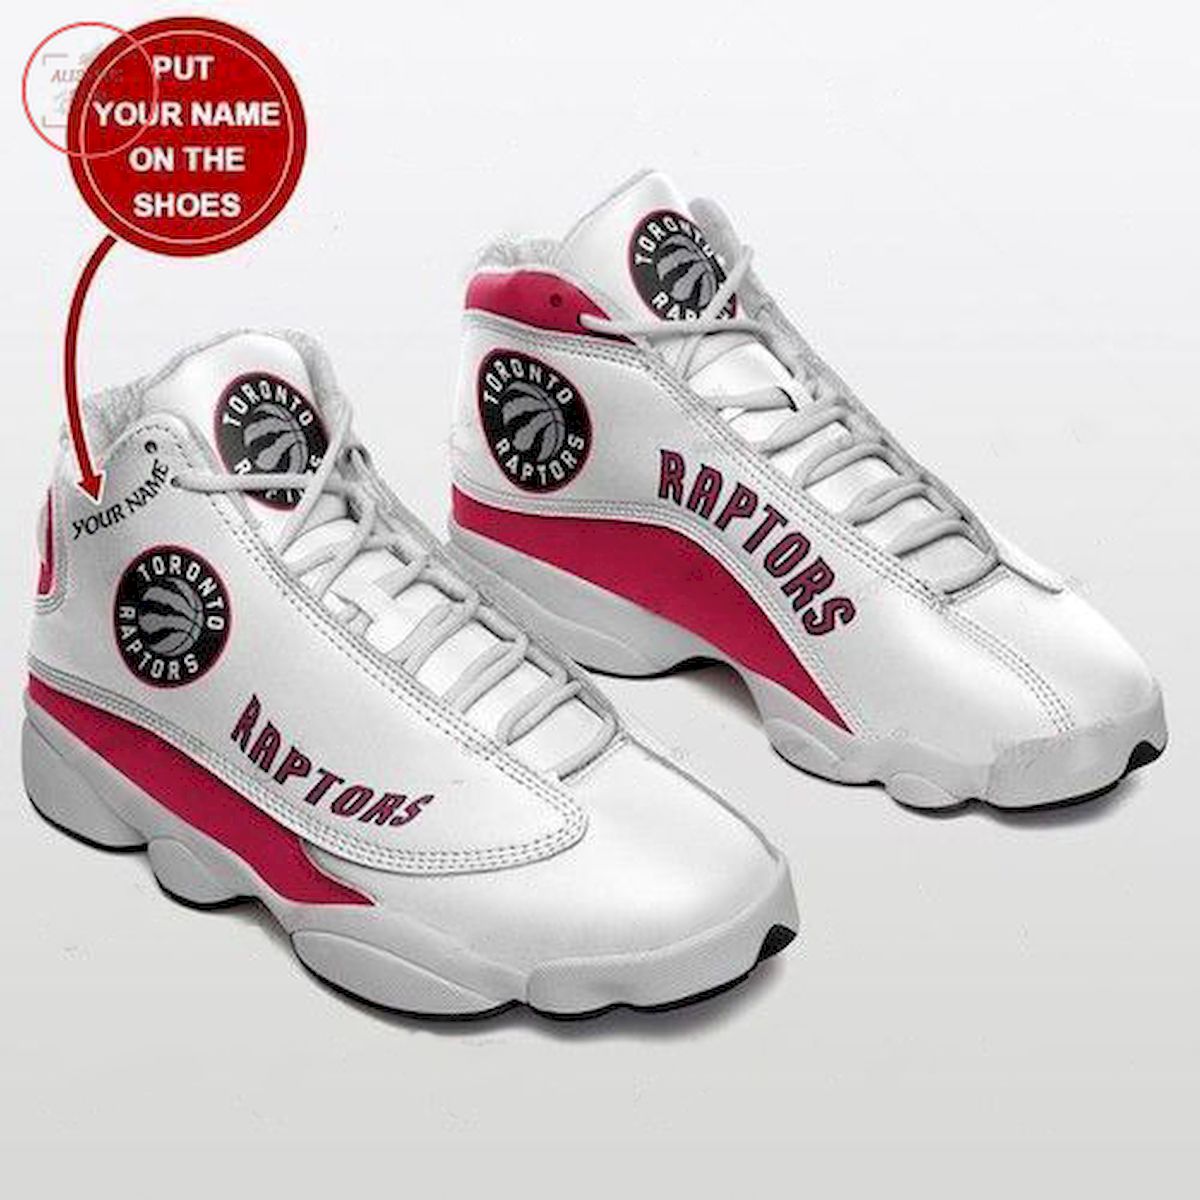 Personalized Toronto Raptors NBA Air Jordan 13 Sneakers Shoes